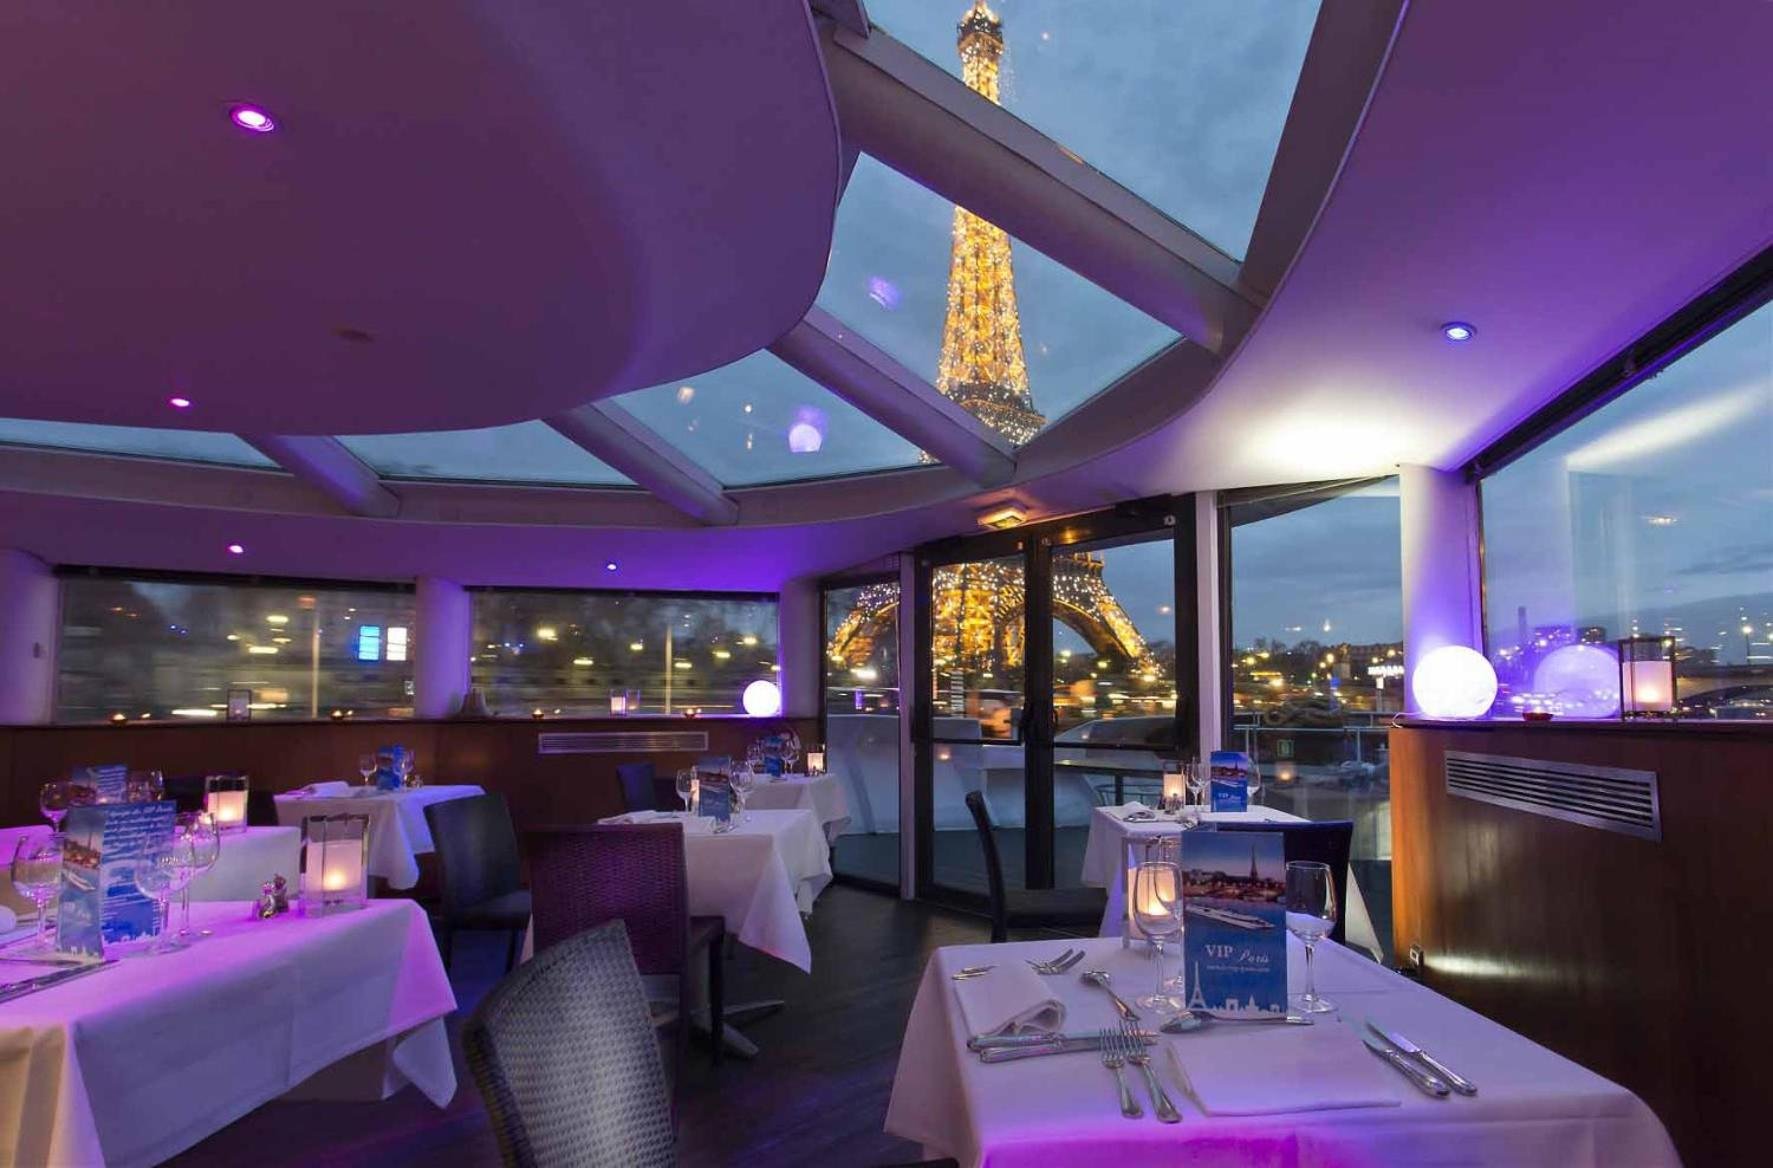 VIP Paris yacht restaurant.jpeg